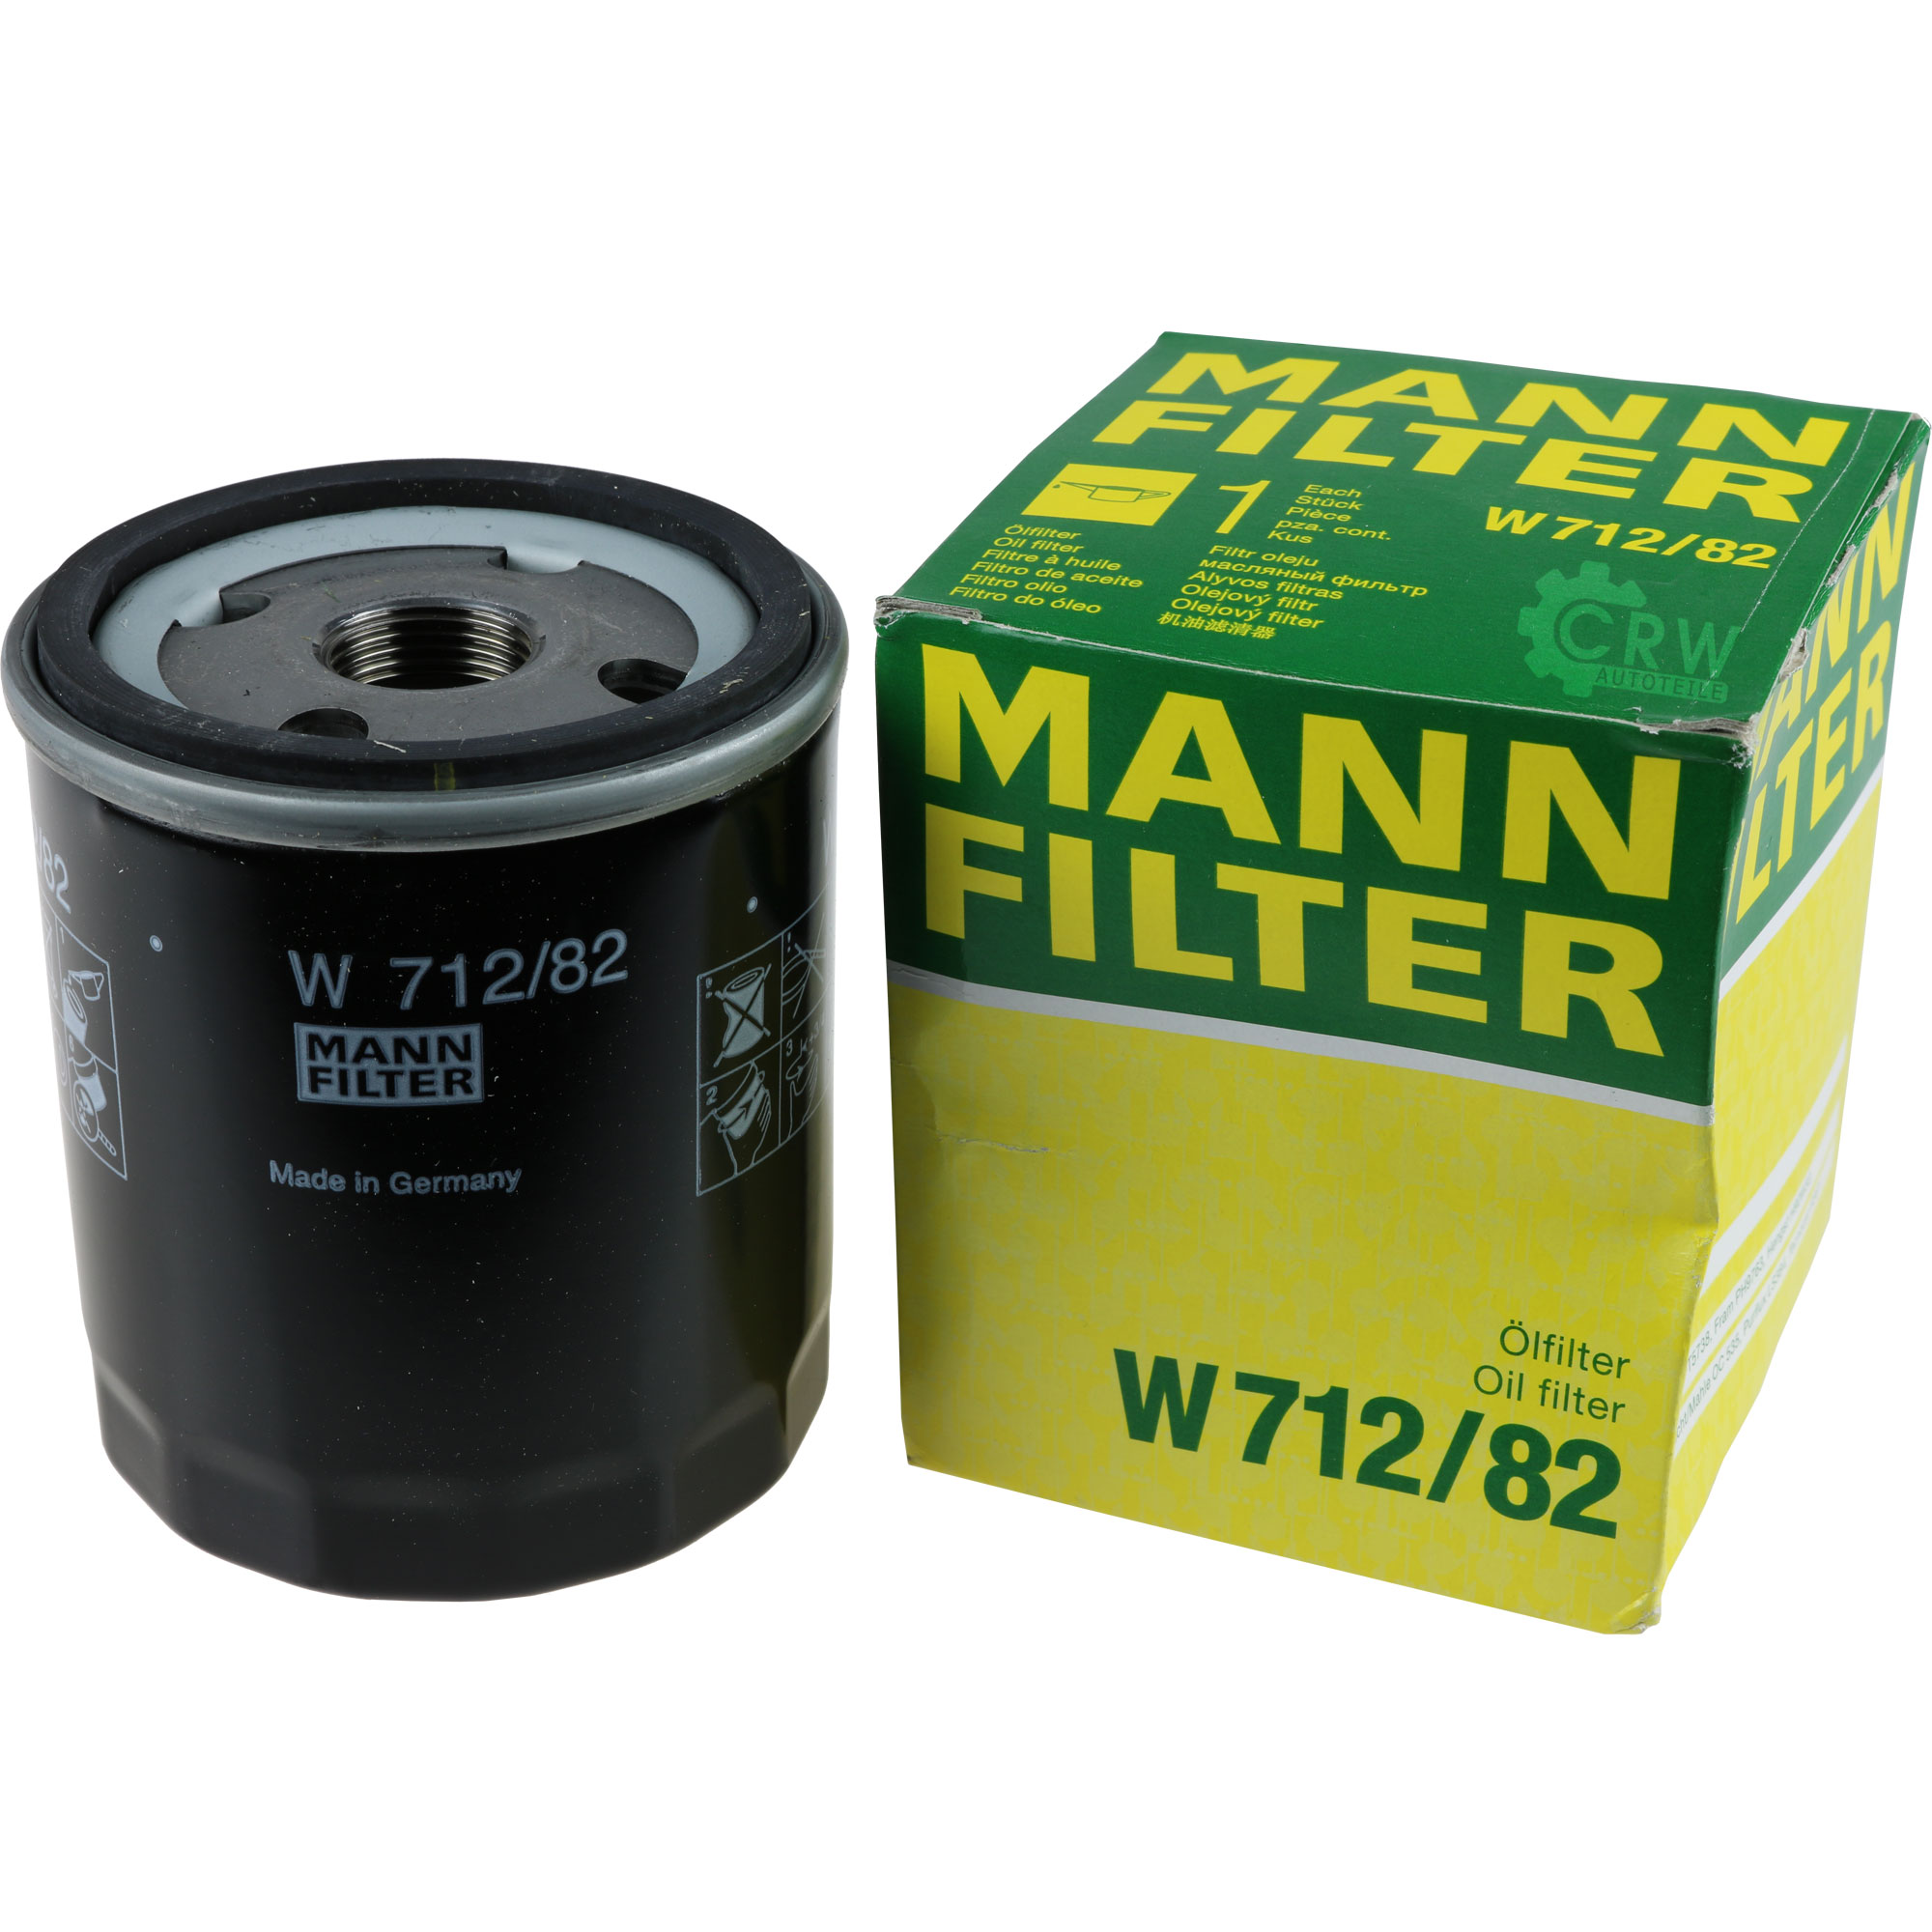 MANN-FILTER Ölfilter W 712/82 Oil Filter